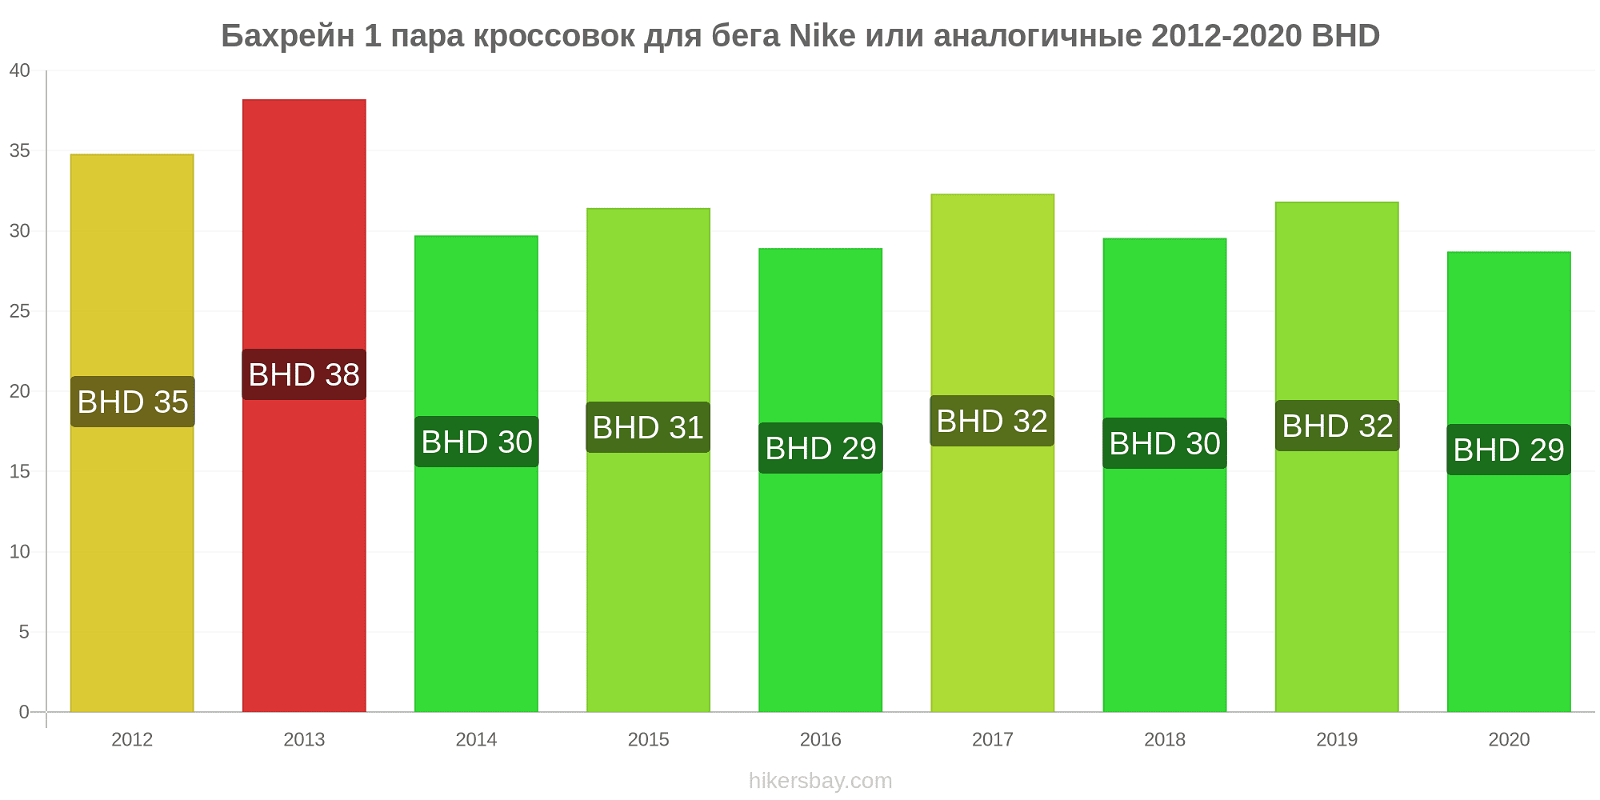 Бахрейн изменения цен 1 пара кроссовок для бега Nike или аналогичные hikersbay.com